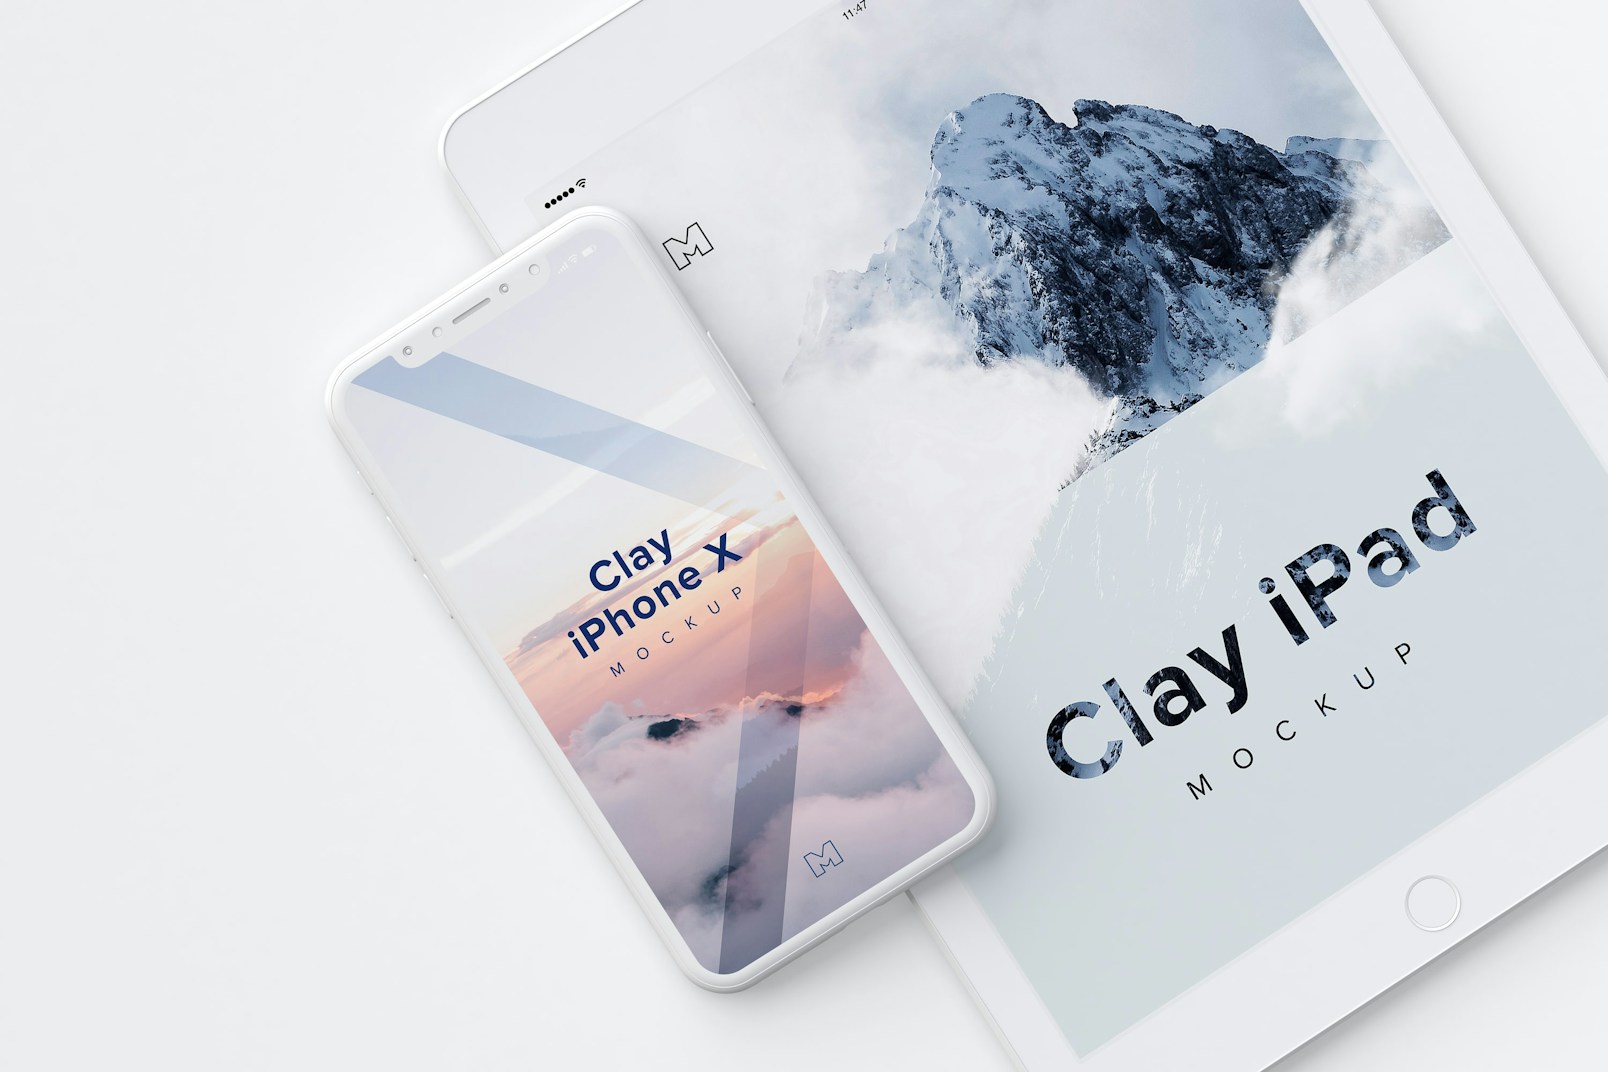 Clay iPhone X and iPad Mockup 01